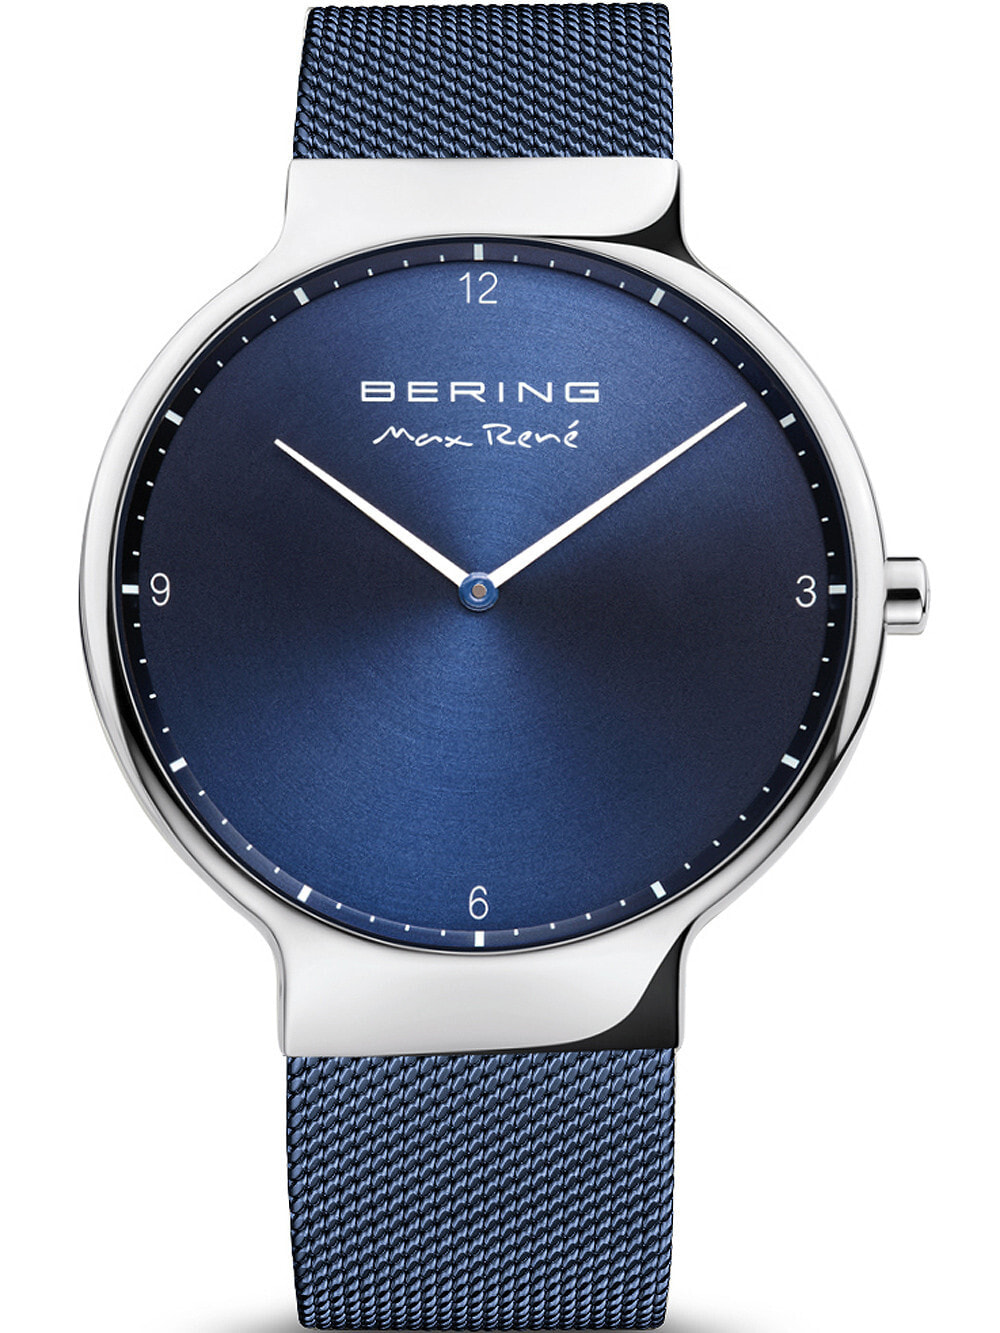 Мужские наручные часы с синим браслетом Bering 15540-307 Max Ren mens 40mm 5ATM